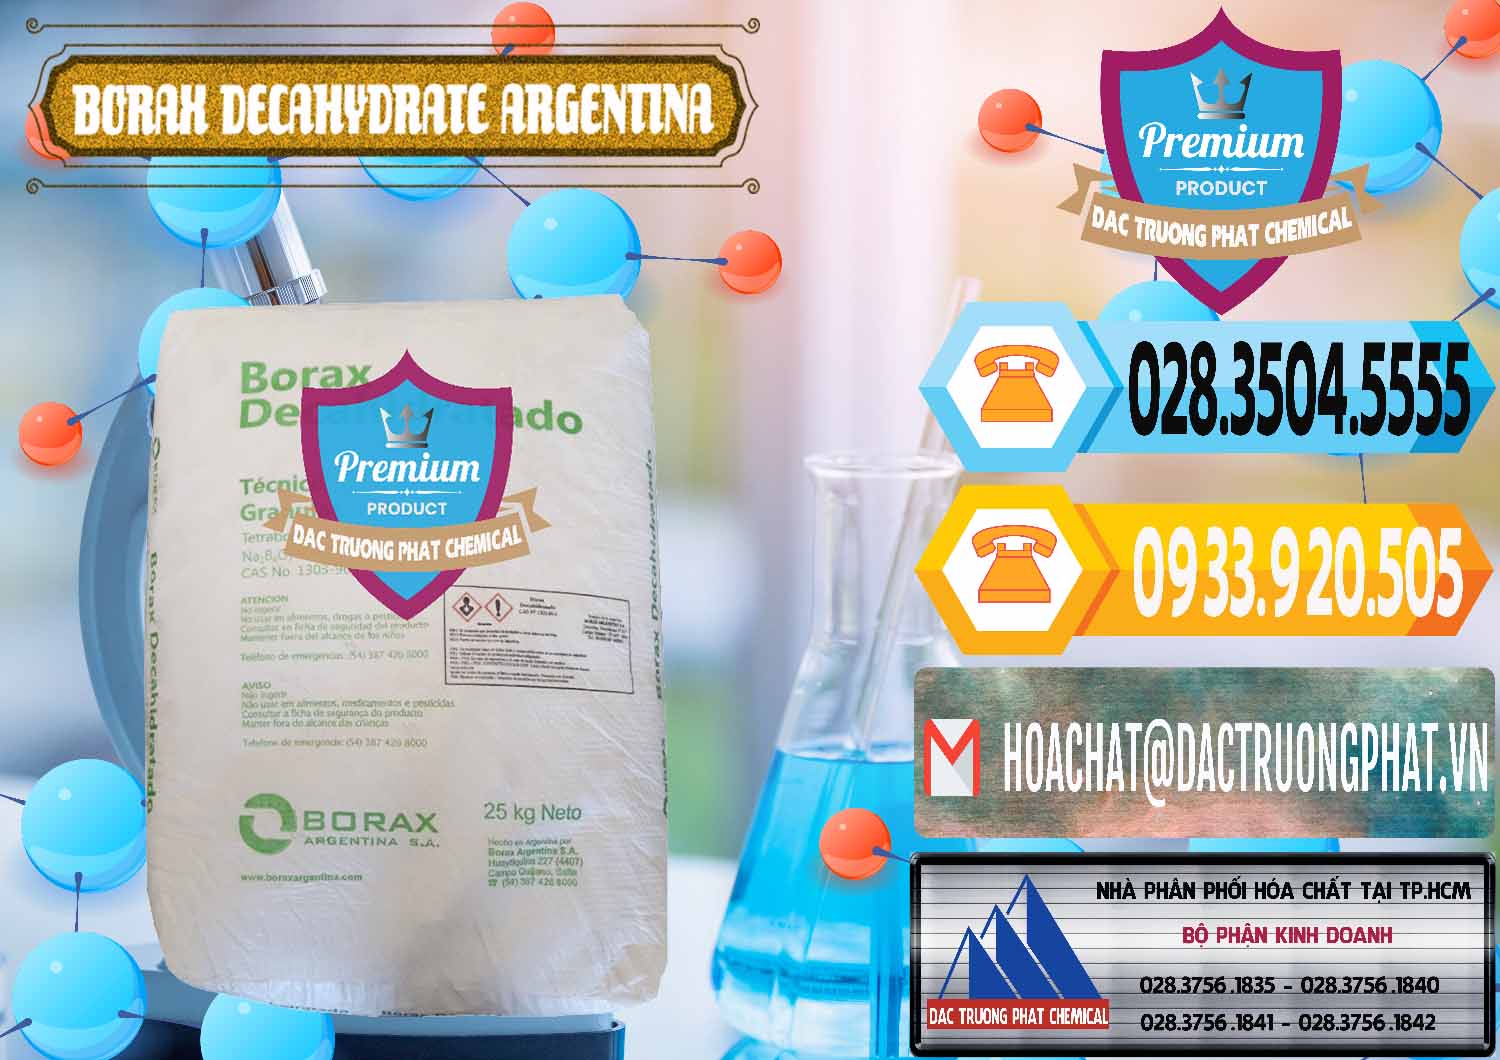 Kinh doanh ( bán ) Borax Decahydrate Argentina - 0446 - Công ty phân phối - cung cấp hóa chất tại TP.HCM - hoachattayrua.net